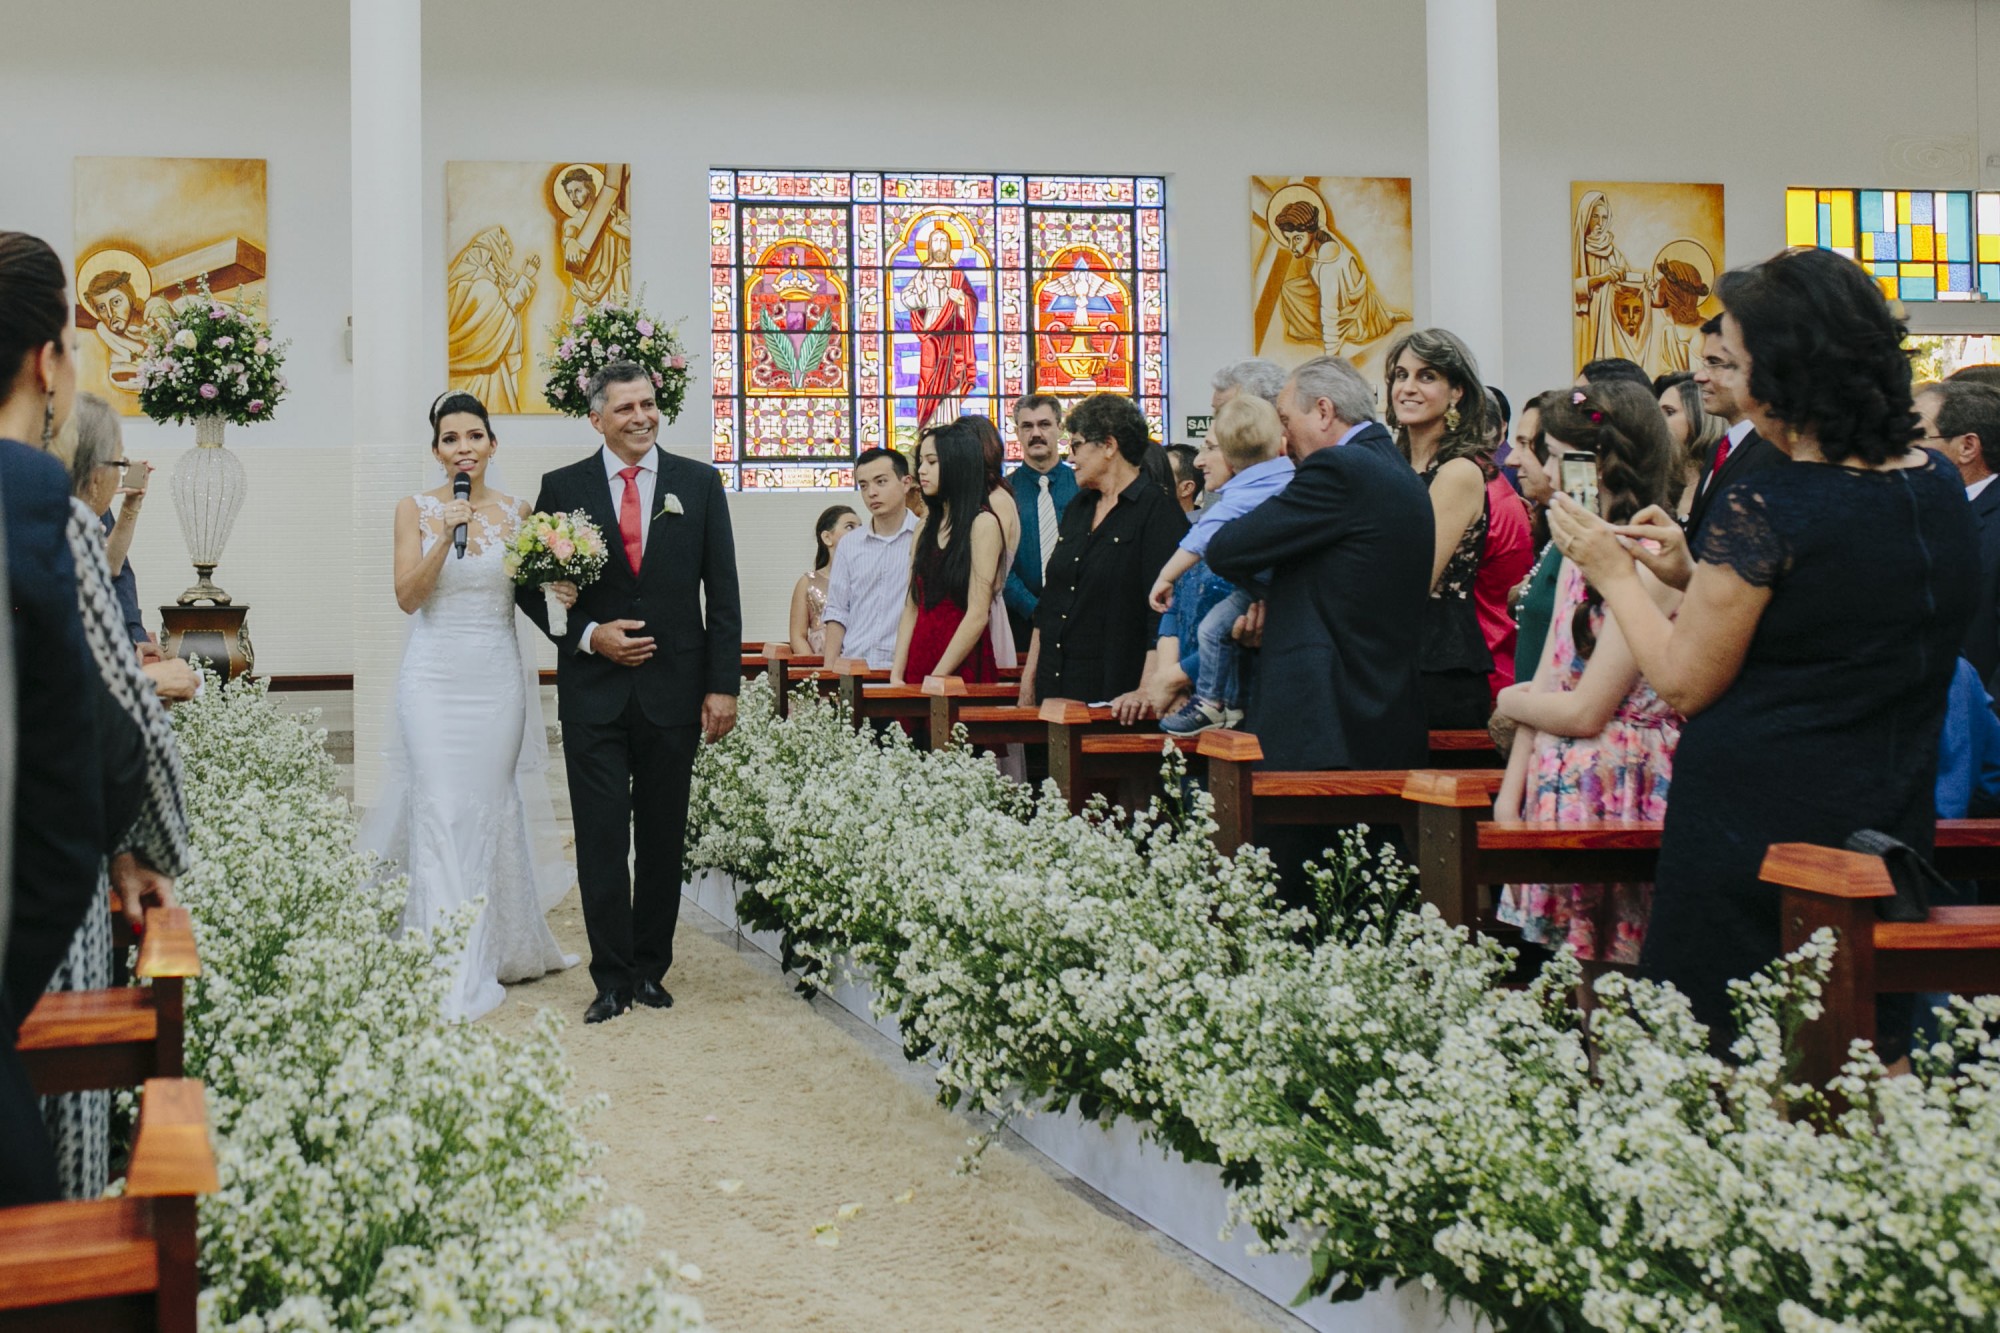 Casamento Camila Rampim e Rafael em Terra Roxa - Paraná - por Lorran Souza e Léia Sotile - fotografos de casamentos - 22